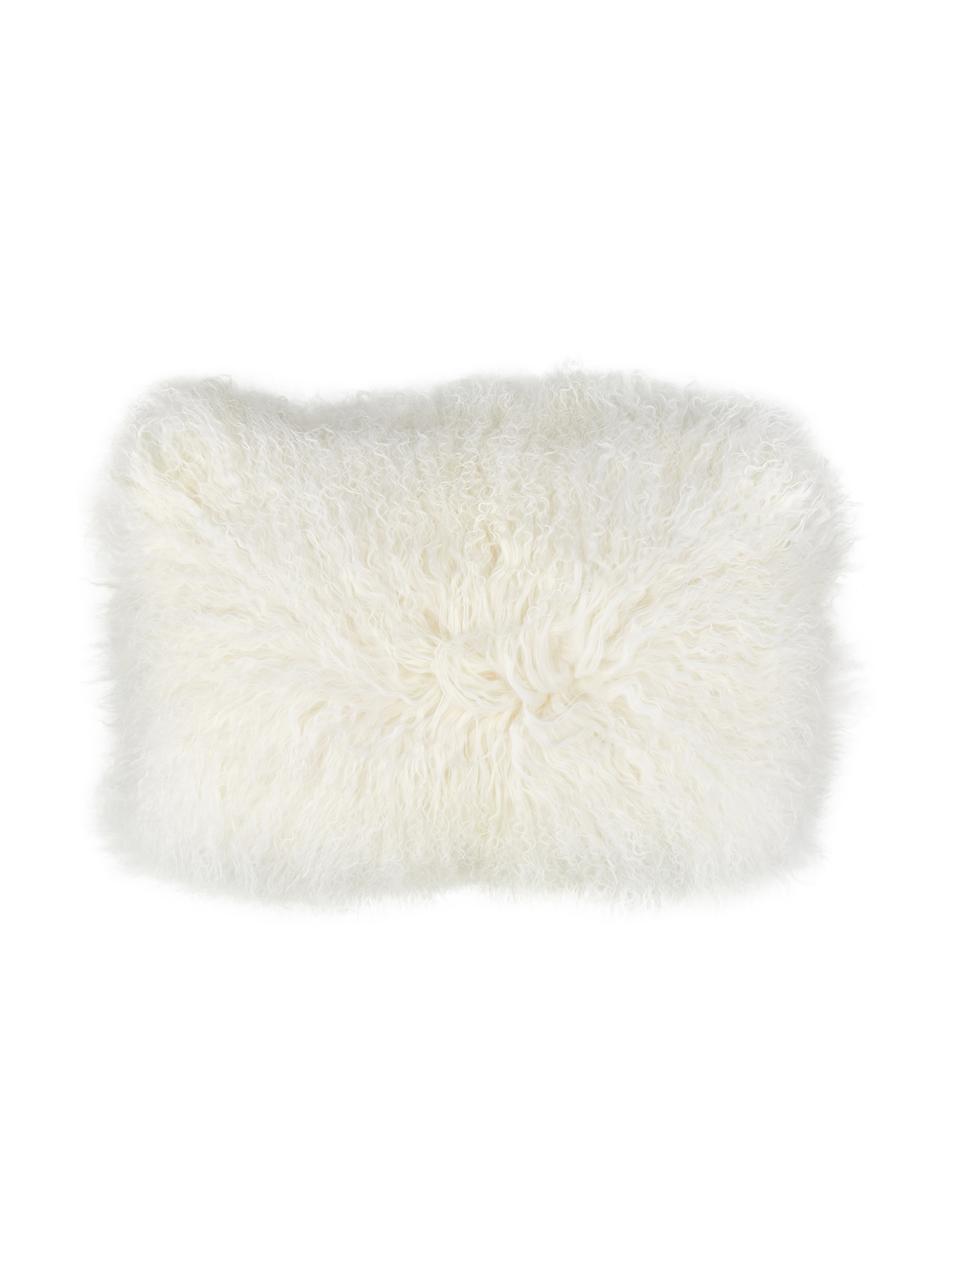 Poszewka na poduszkę ze skóry jagnięcej o długim włosiu Ella, kręcona, Naturalny biały, S 30 x D 50 cm